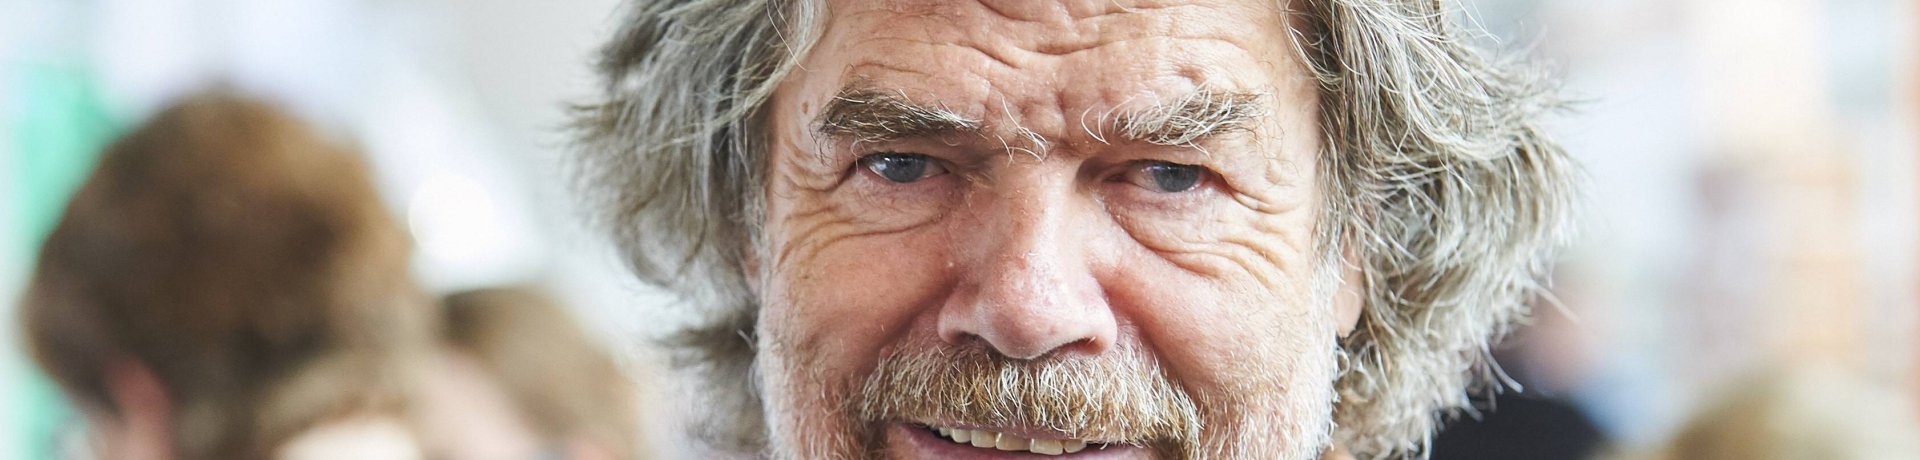 Reinhold Messner hat mit „Mount Everest – Der letzte Schritt“ seinen dritten Film gedreht.